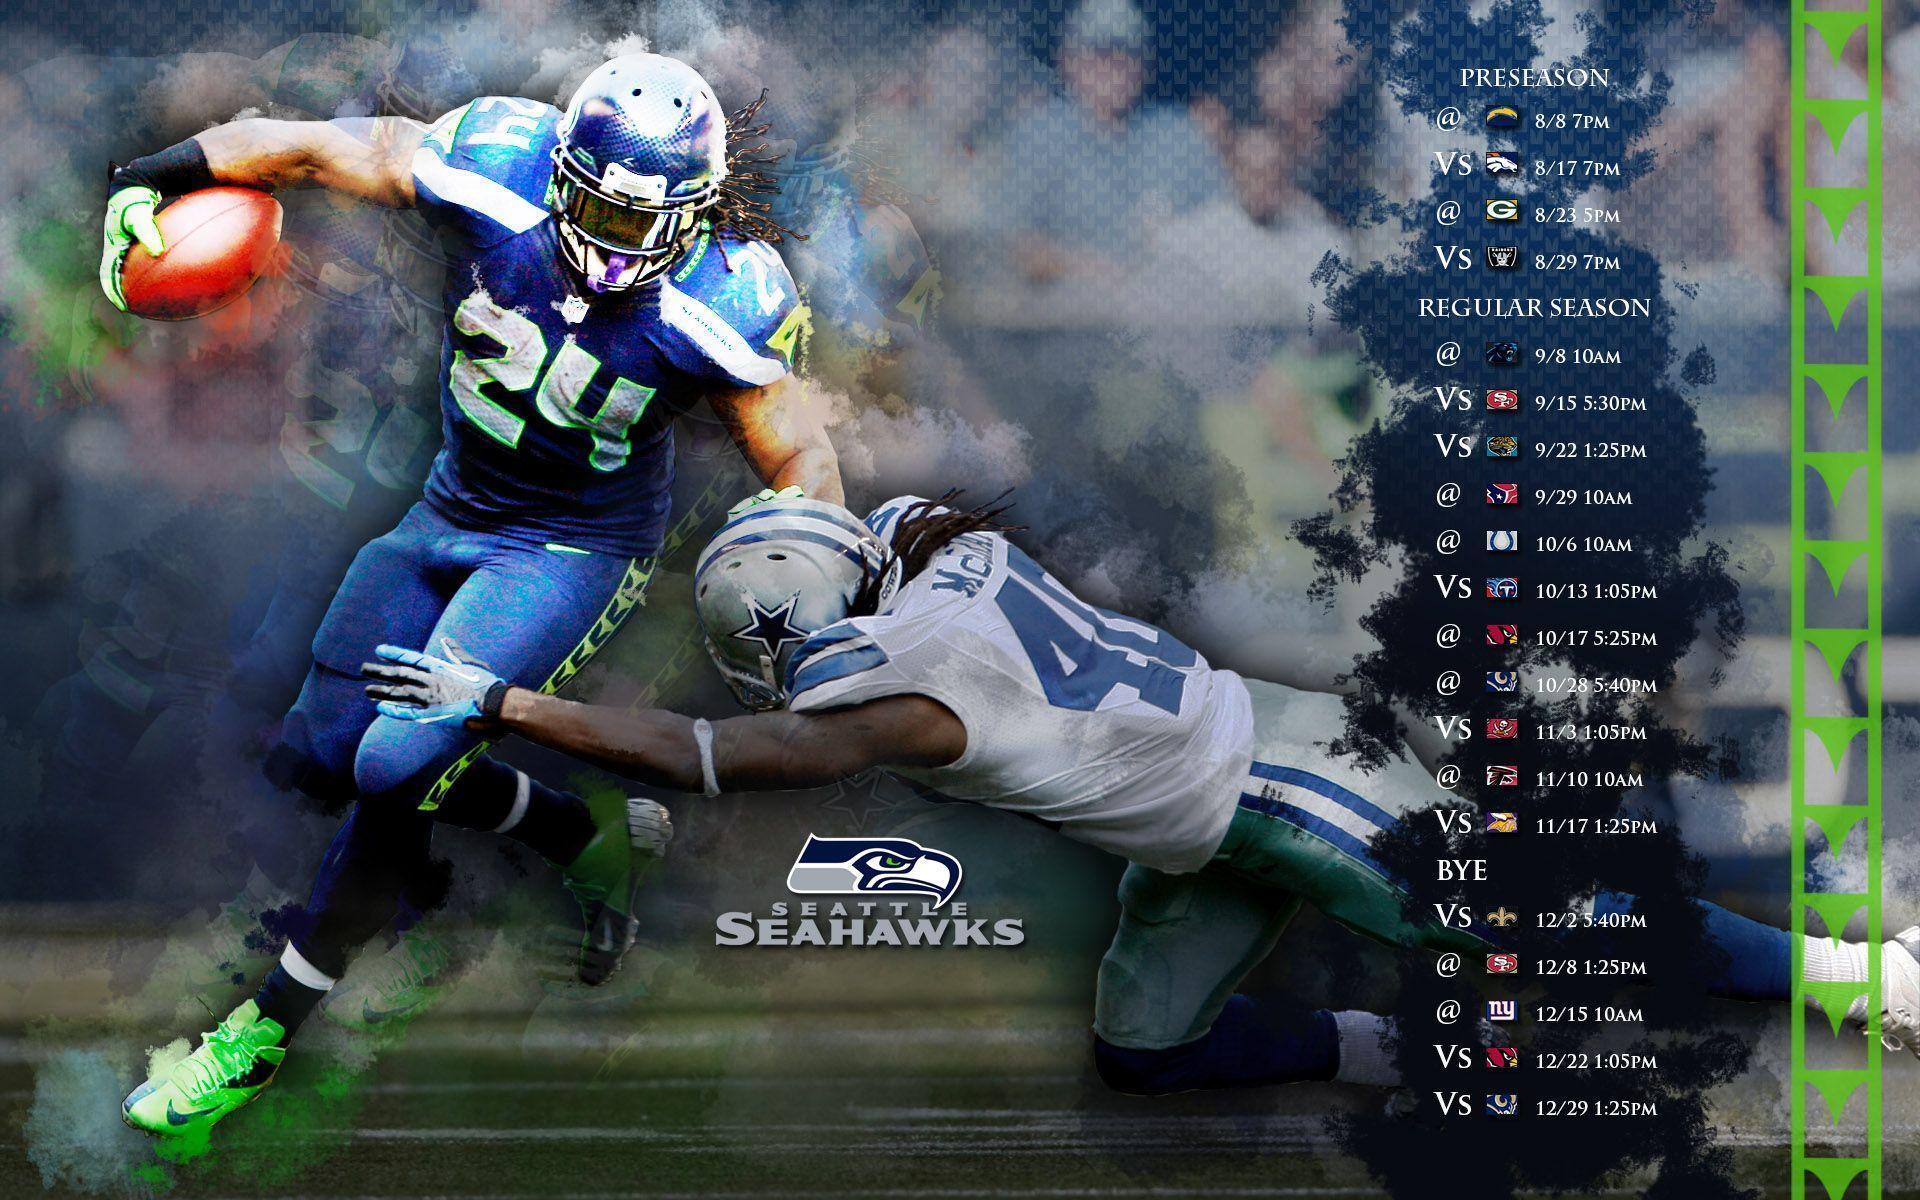 Seattle Seahawks Schedule Wallpaper